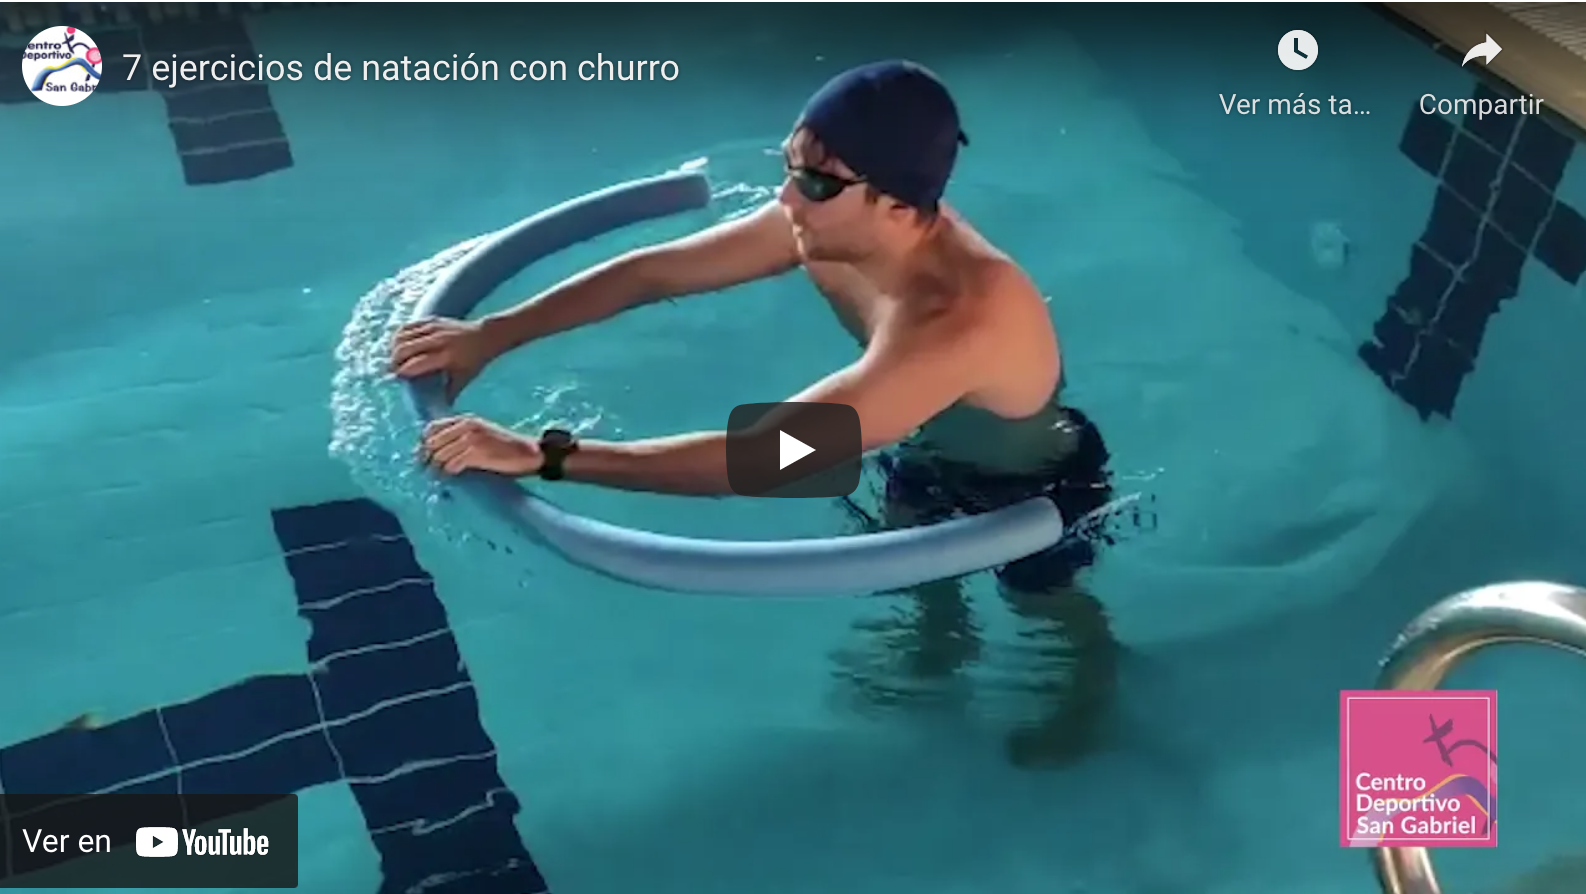 7 ejercicios de natación con churro - Centro Deportivo San Gabriel